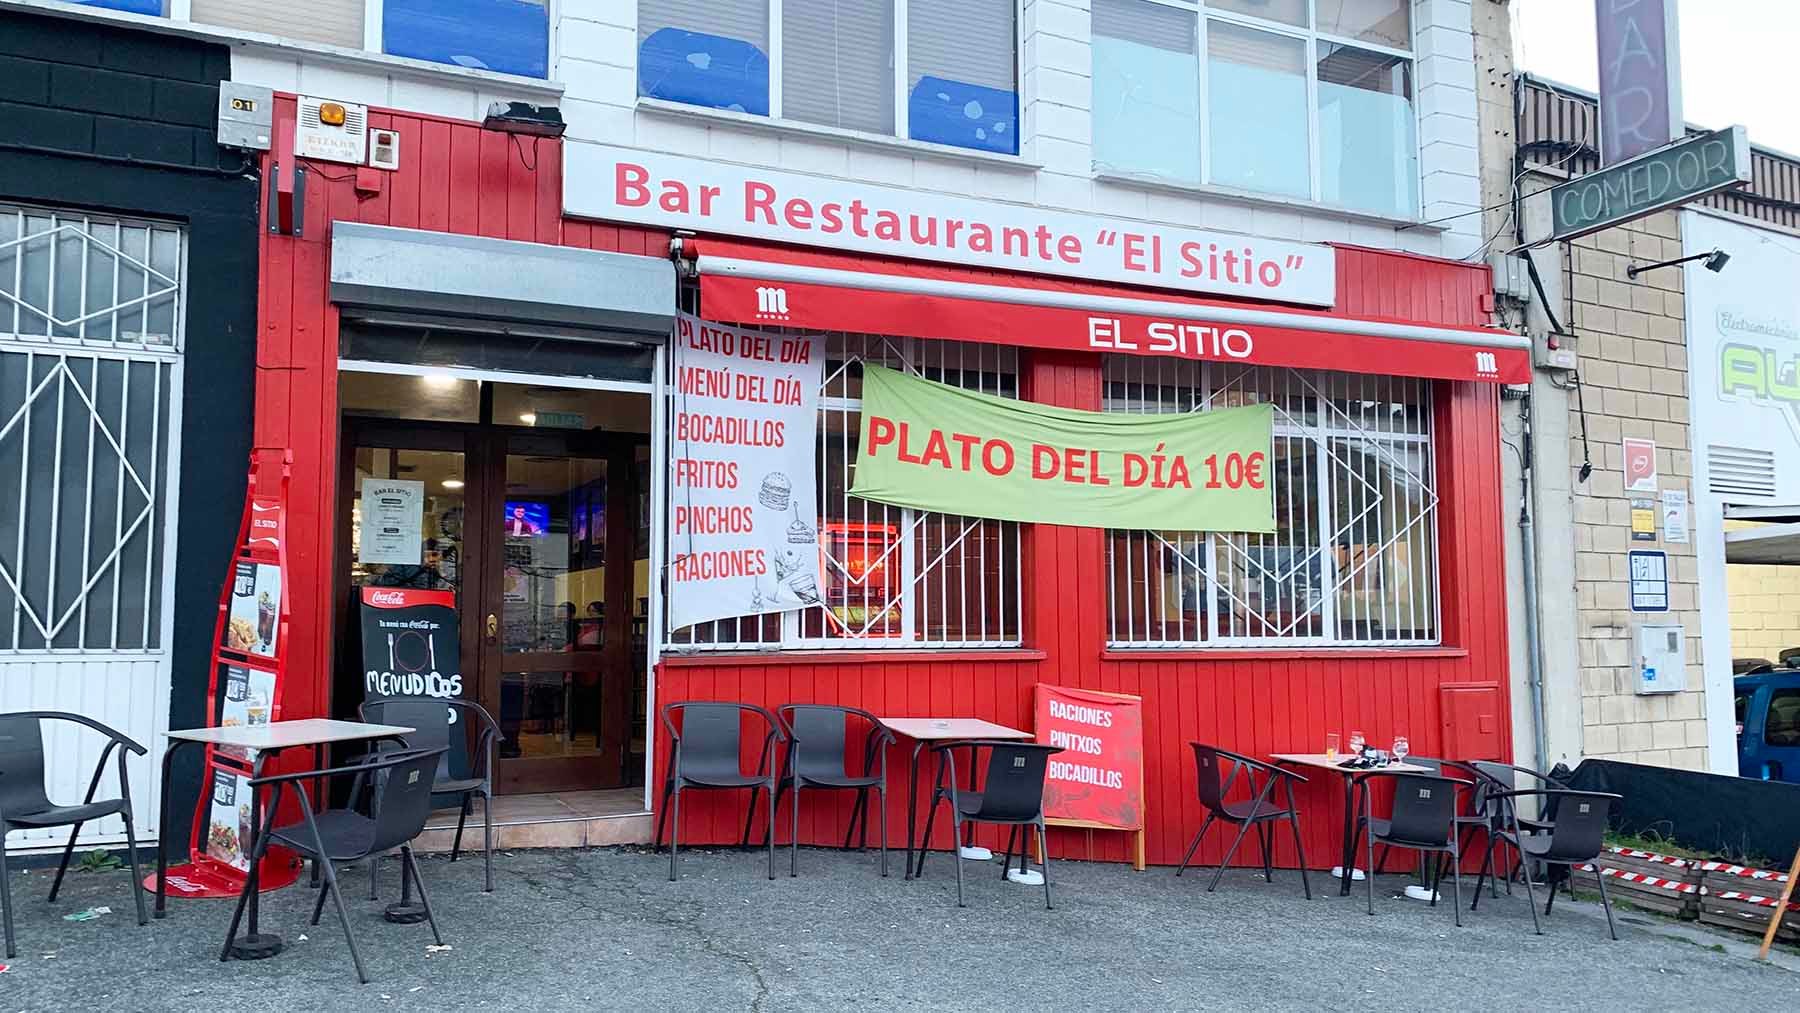 Fachada del bar restaurante El Sitio en Estella. Navarra.com